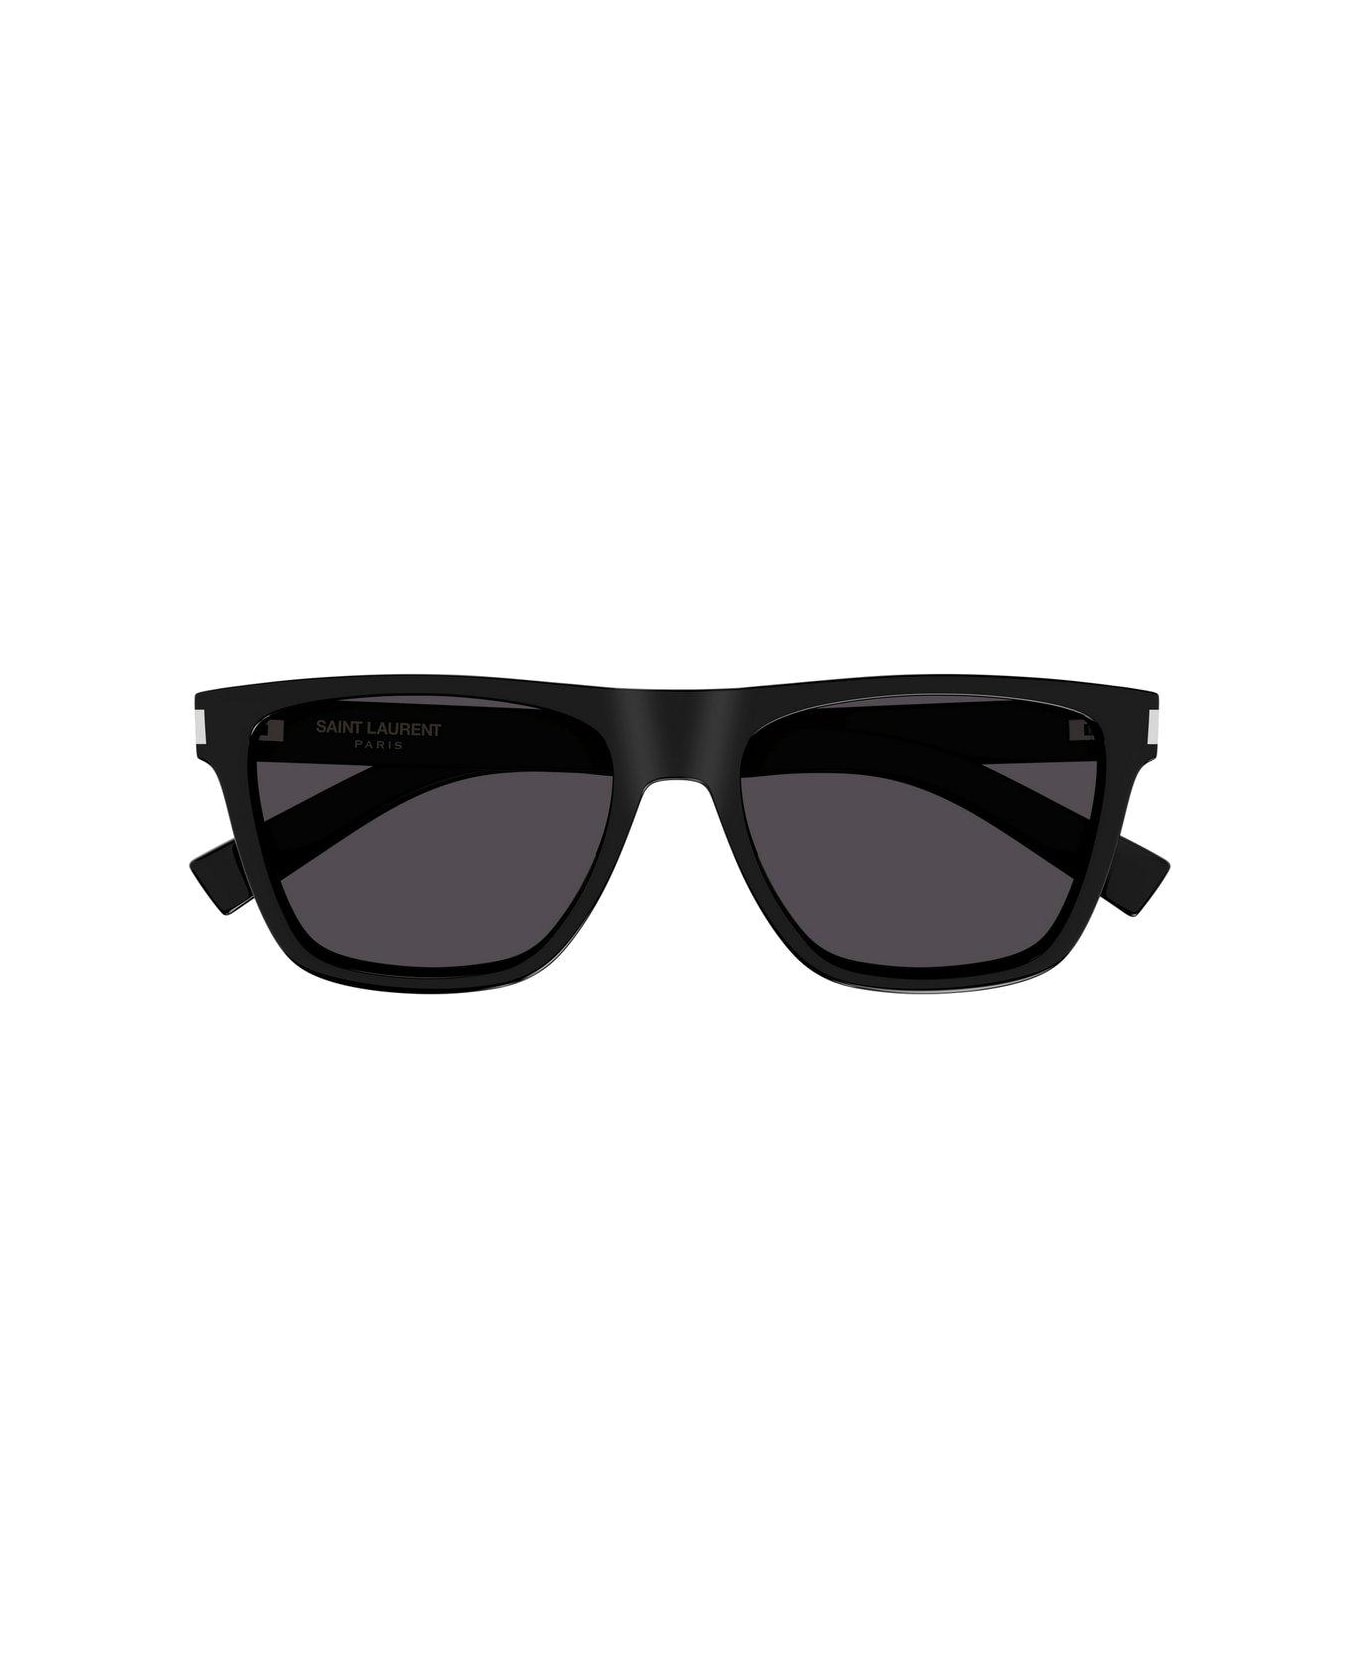 Saint Laurent Eyewear Square Frame Sunglasses Sunglasses - 001 BLACK CRYSTAL BLACK サングラス